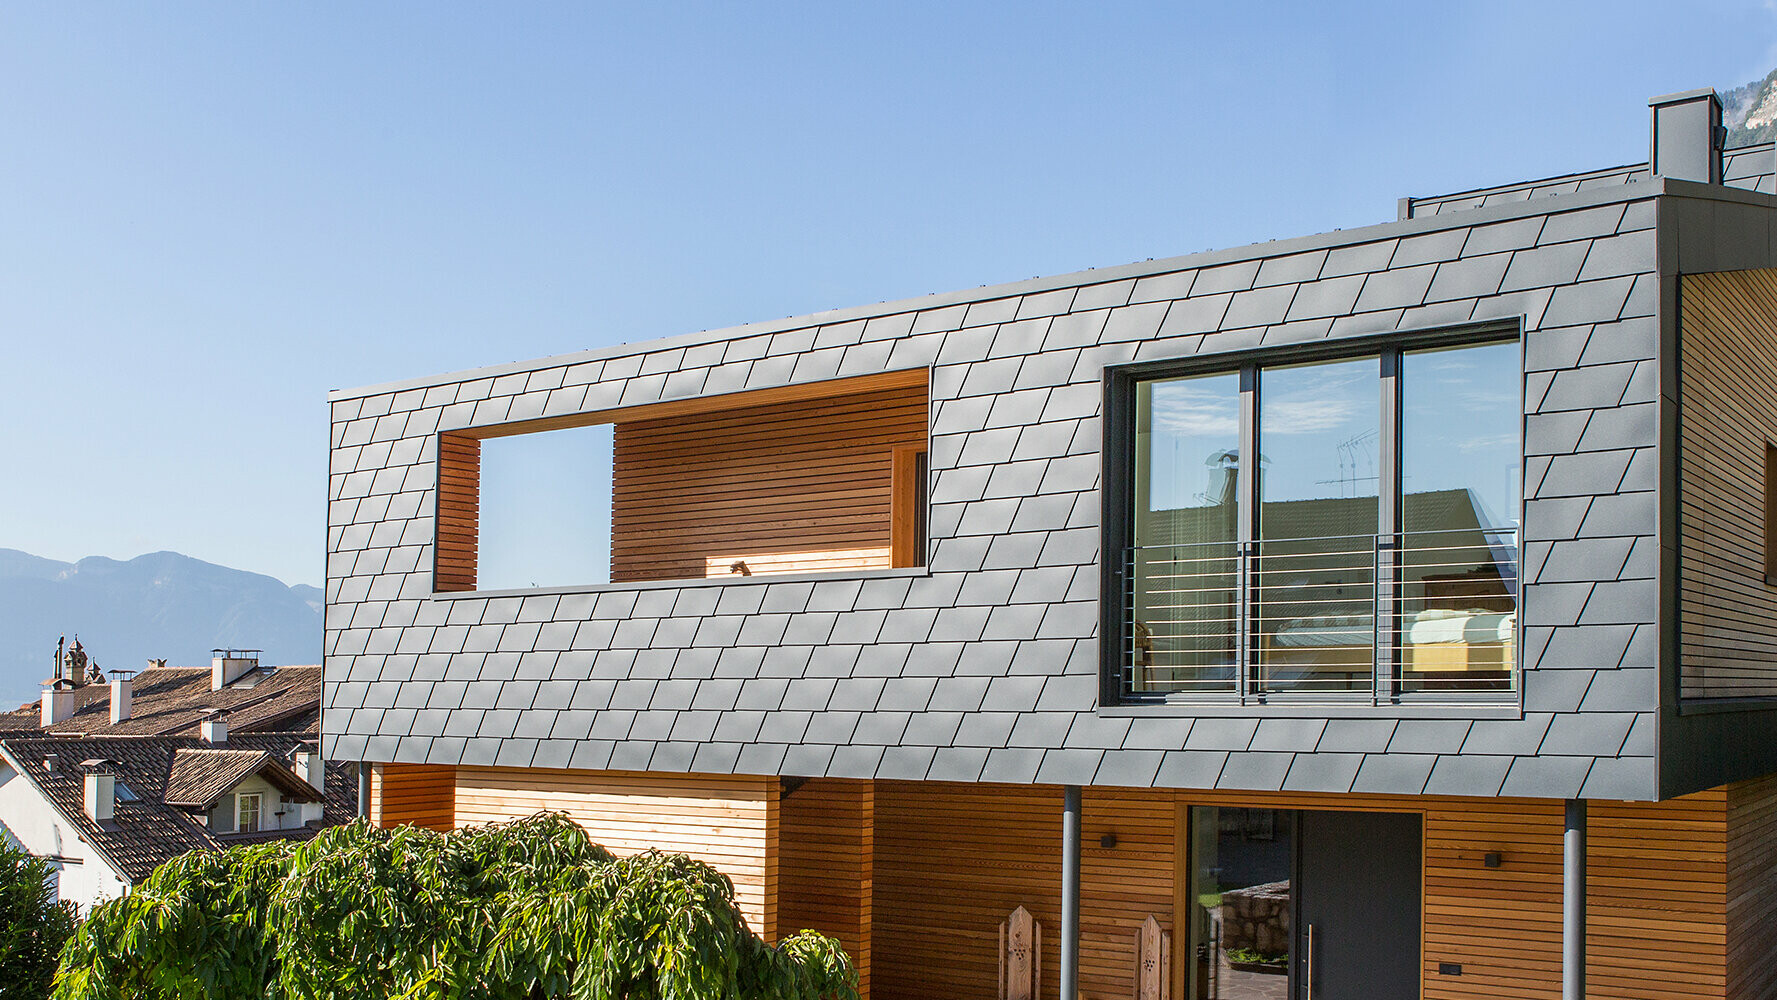 Einfamilienhaus mit PREFA Wandschindels in der Farbe P.10 Anthrazit. Das robuste Fassadensystem aus Aluminium ist besonders langlebig und somit Ideal für die Wetterseite.